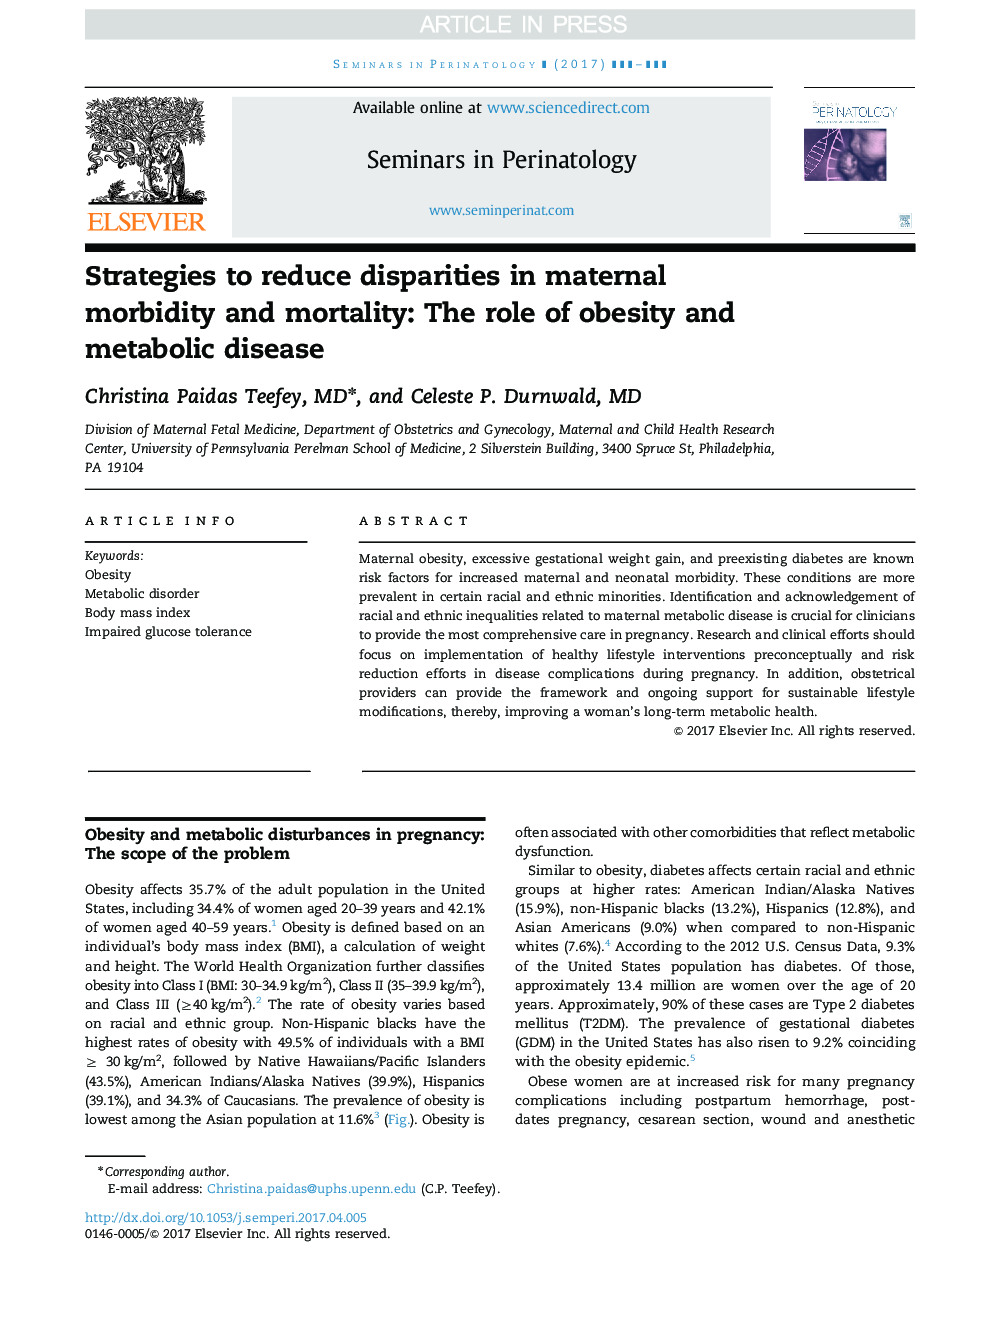 استراتژی های کاهش نابرابری در بروز و مرگ و میر مادران: نقش چاقی و بیماری متابولیک 